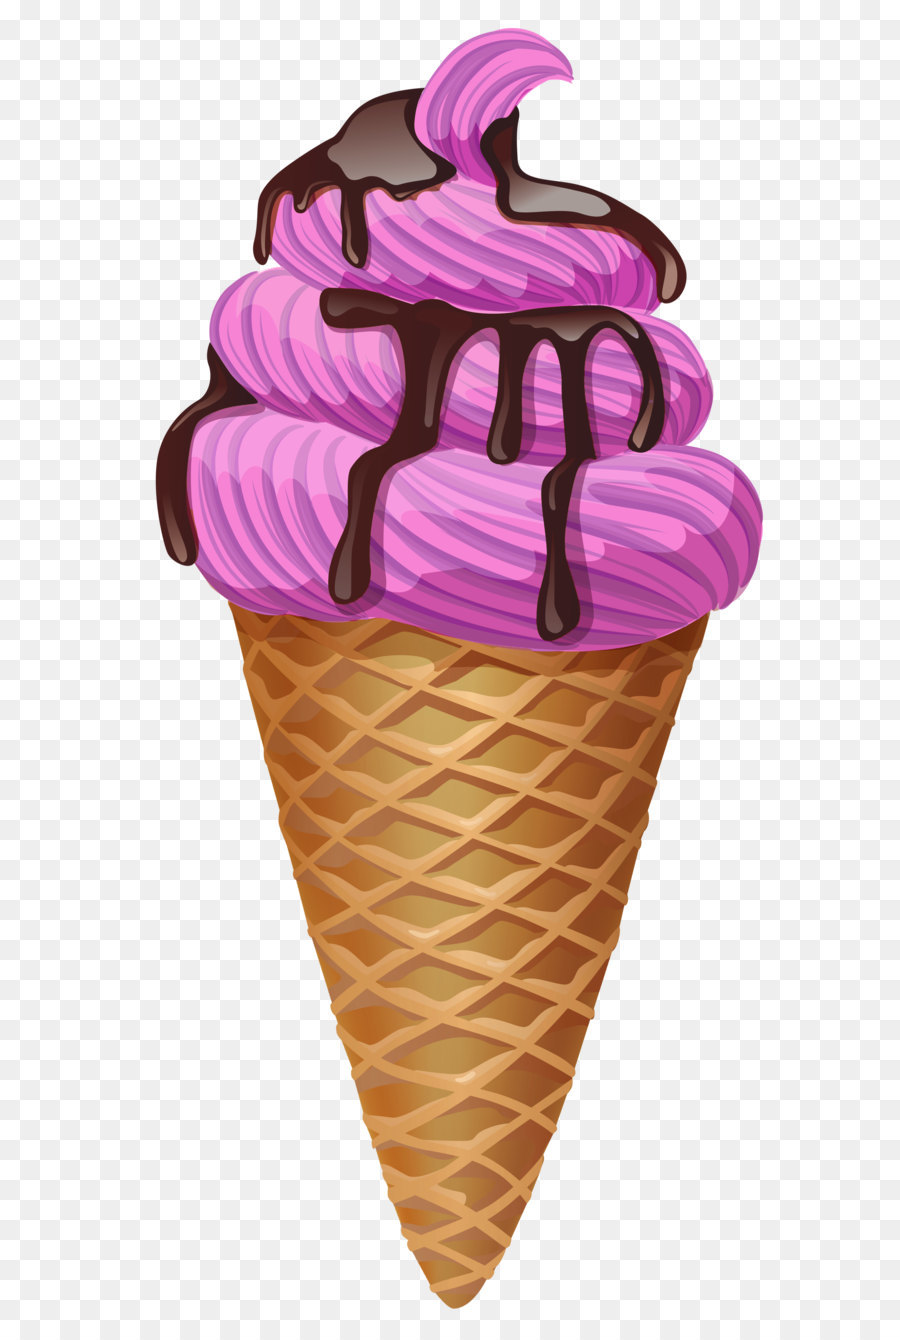 Ice cream cone Chocolate ice cream Sundae - Transparent Pink Ice Cream Cone Picture png download - 1715*3497 - Free Transparent Ice Cream png Download.